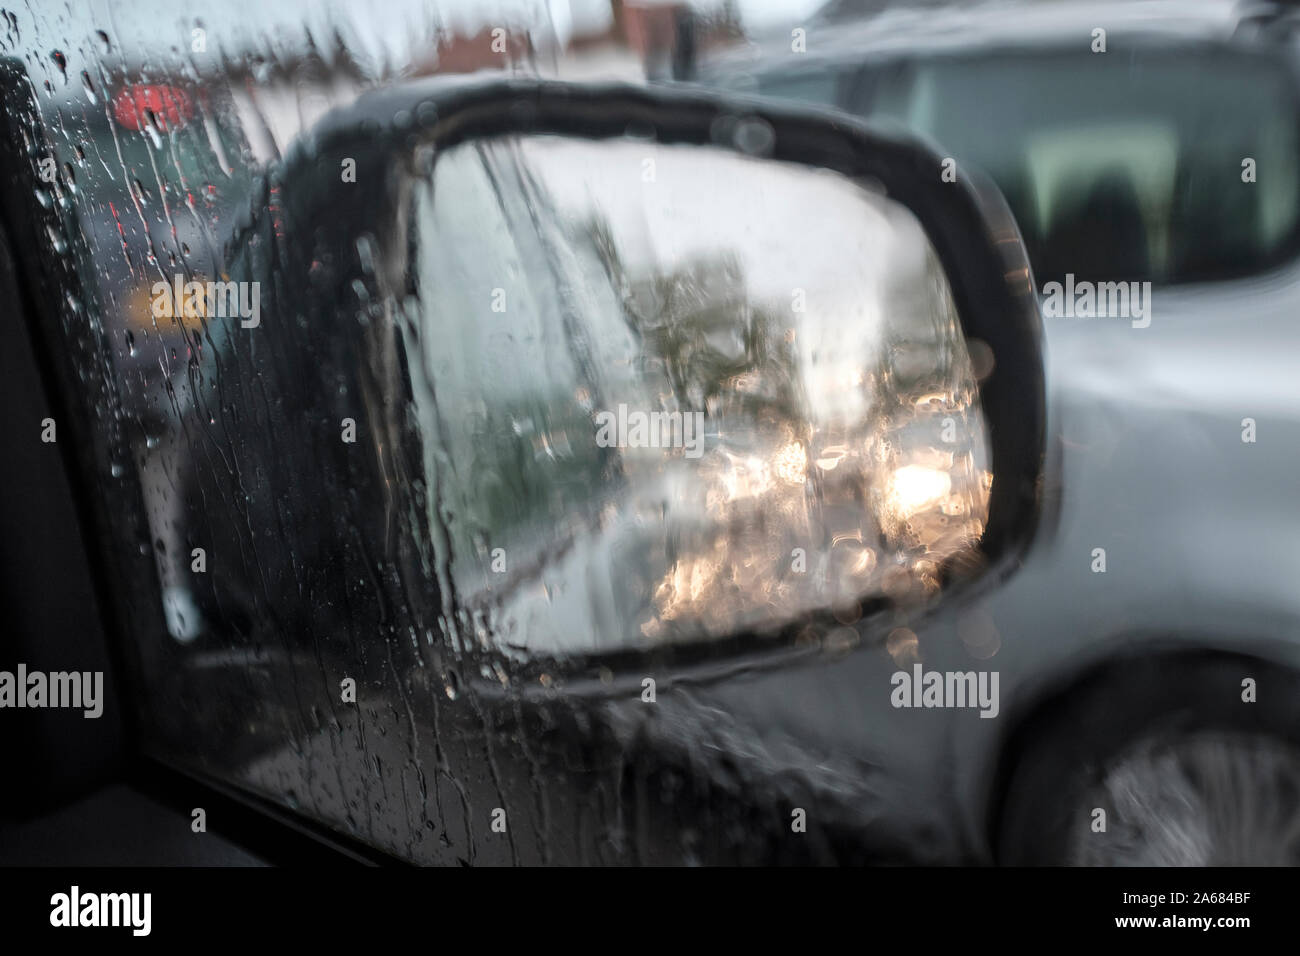 Conducción en Heavy Rain, el retrovisor visibilidad limitada .UK Foto de stock